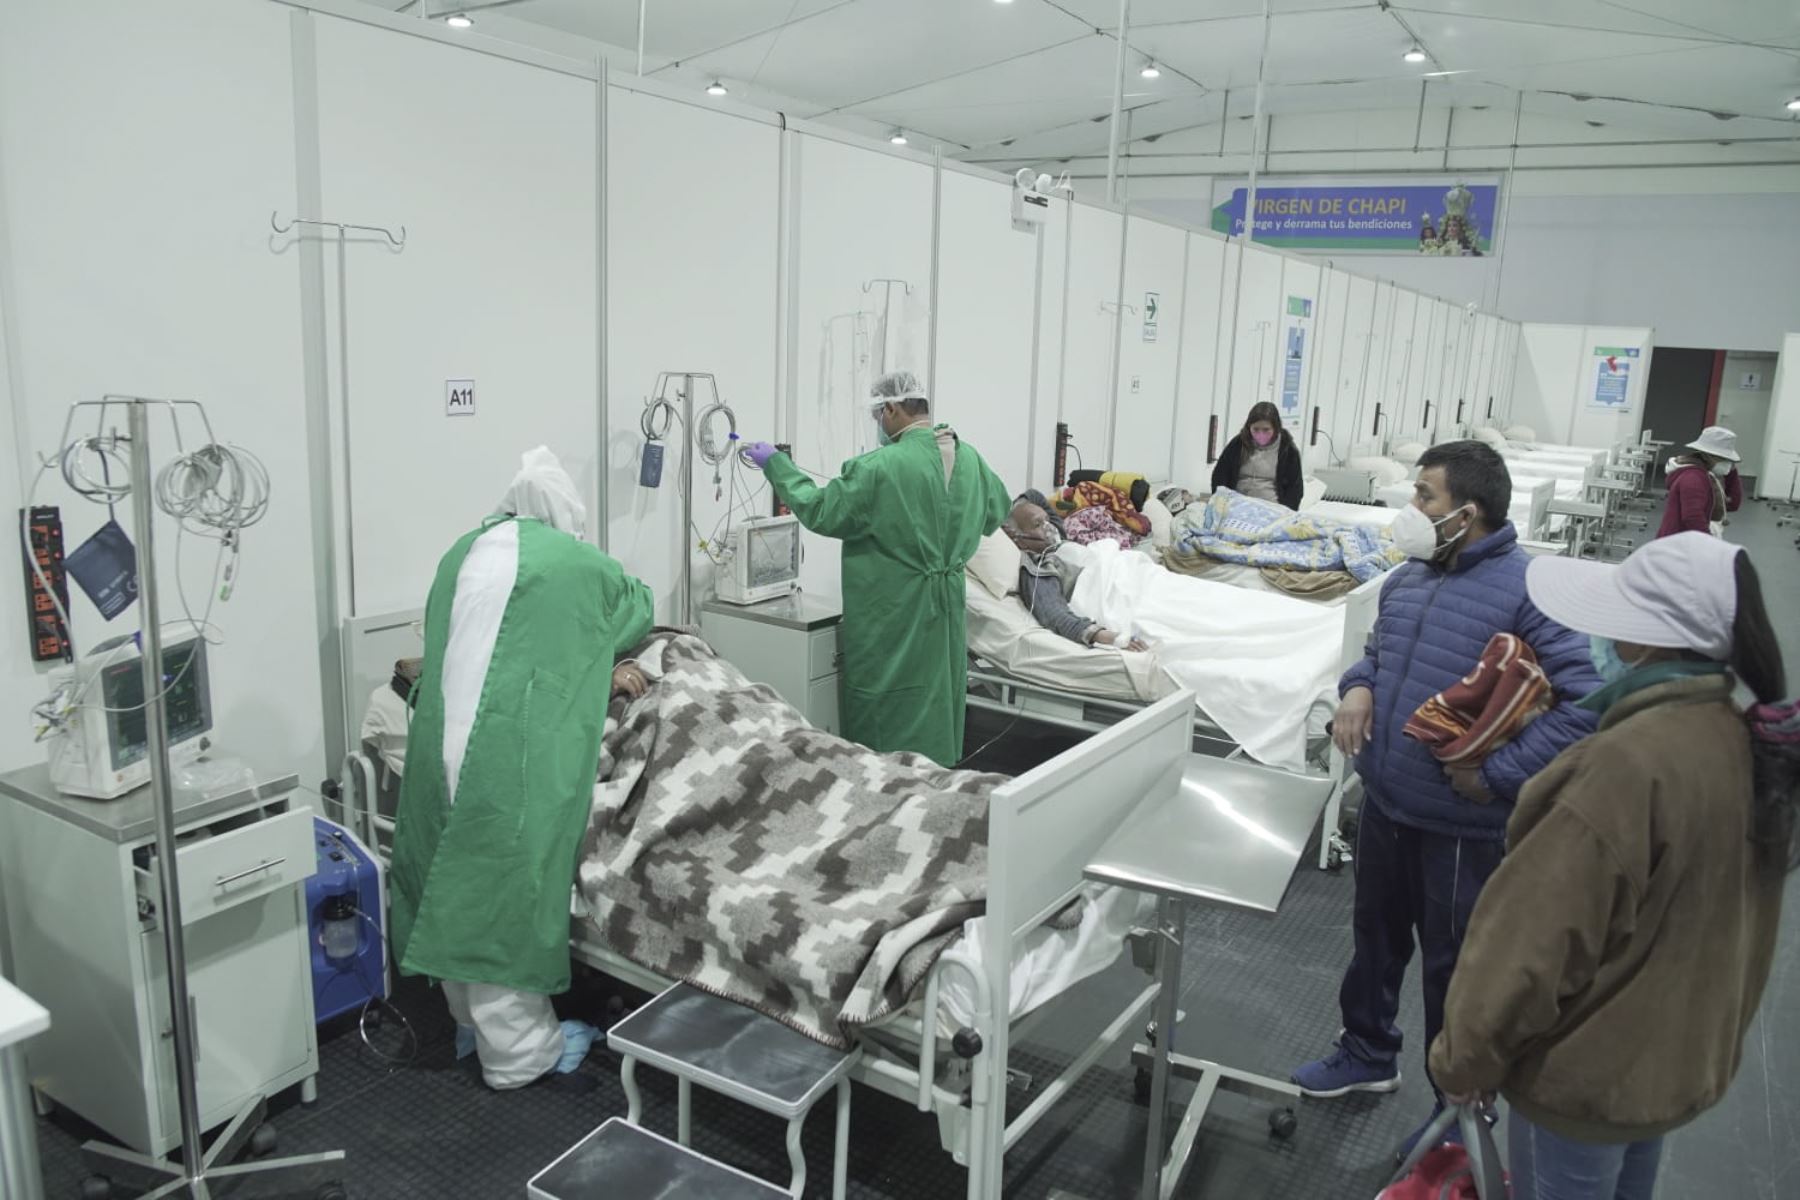 Centro temporal de atención a pacientes covid-19 en Arequipa. La crítica situación llevó a los colegios profesionales a pedir que el Ejecutivo tome el control de la salud. ANDINA/Difusión